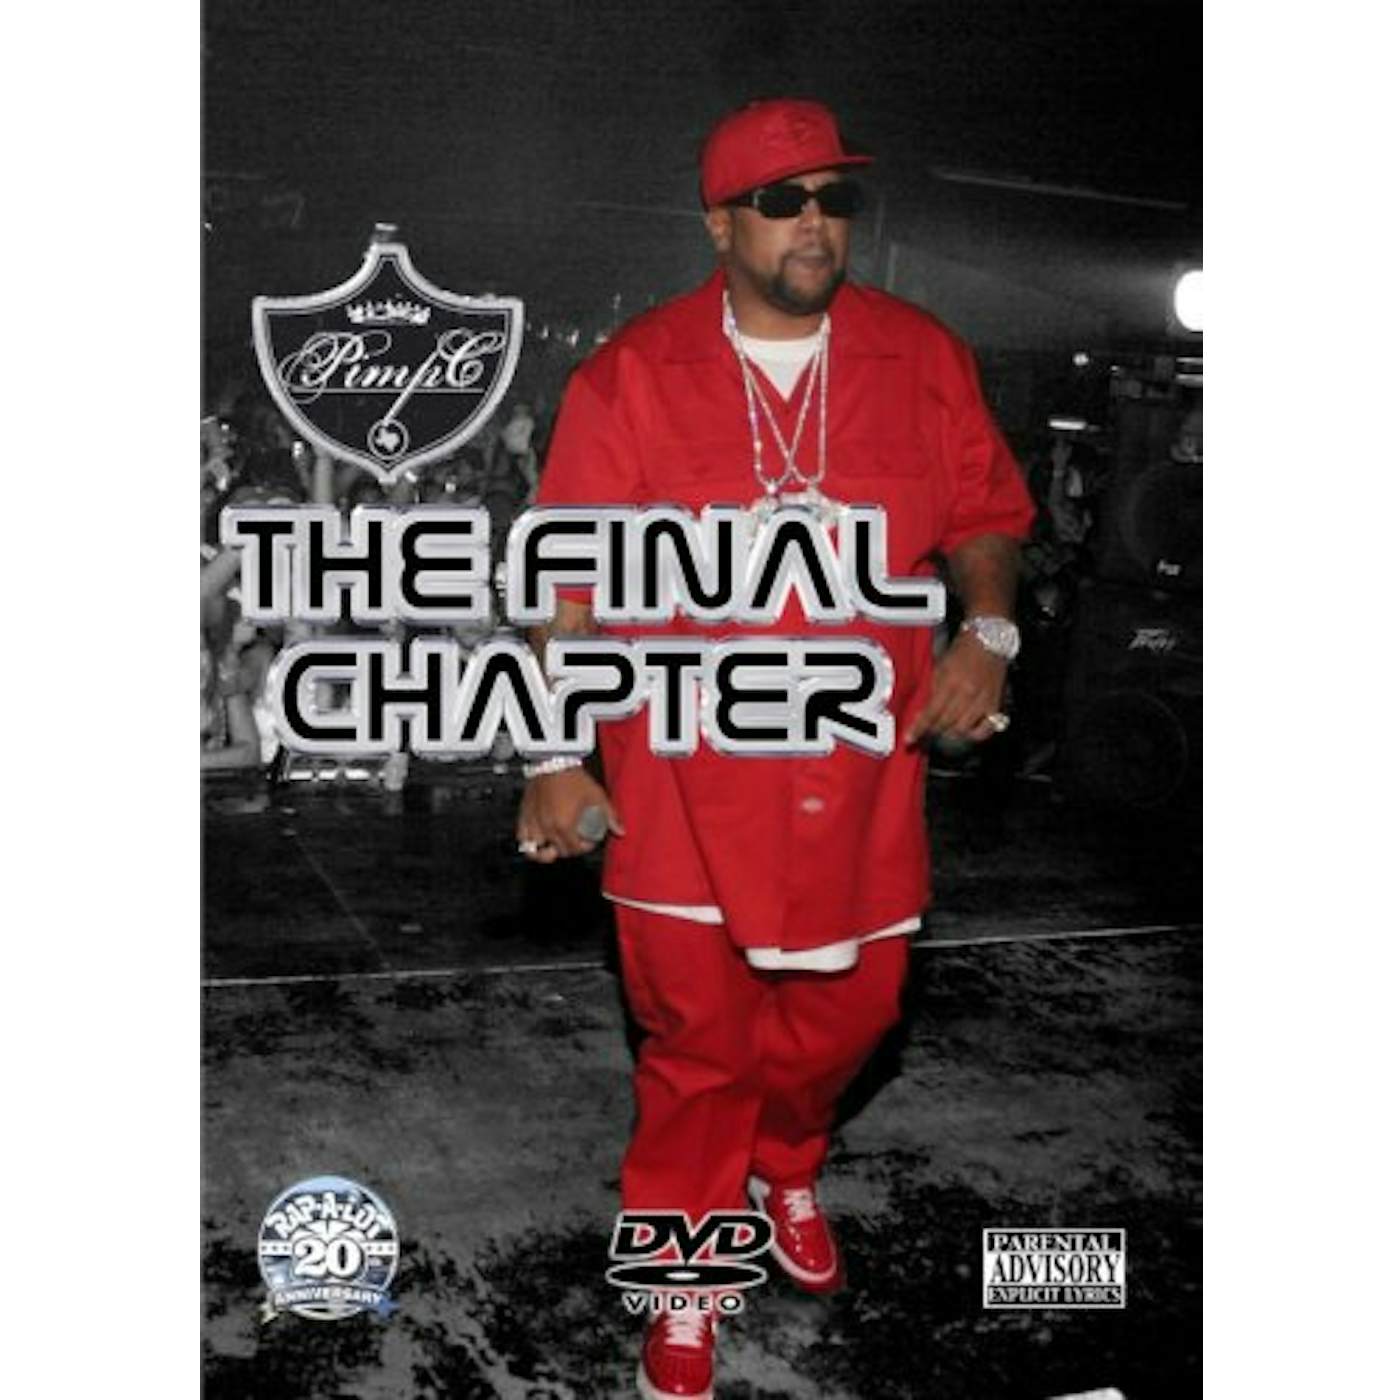 Pimp C FINAL CHAPTER DVD